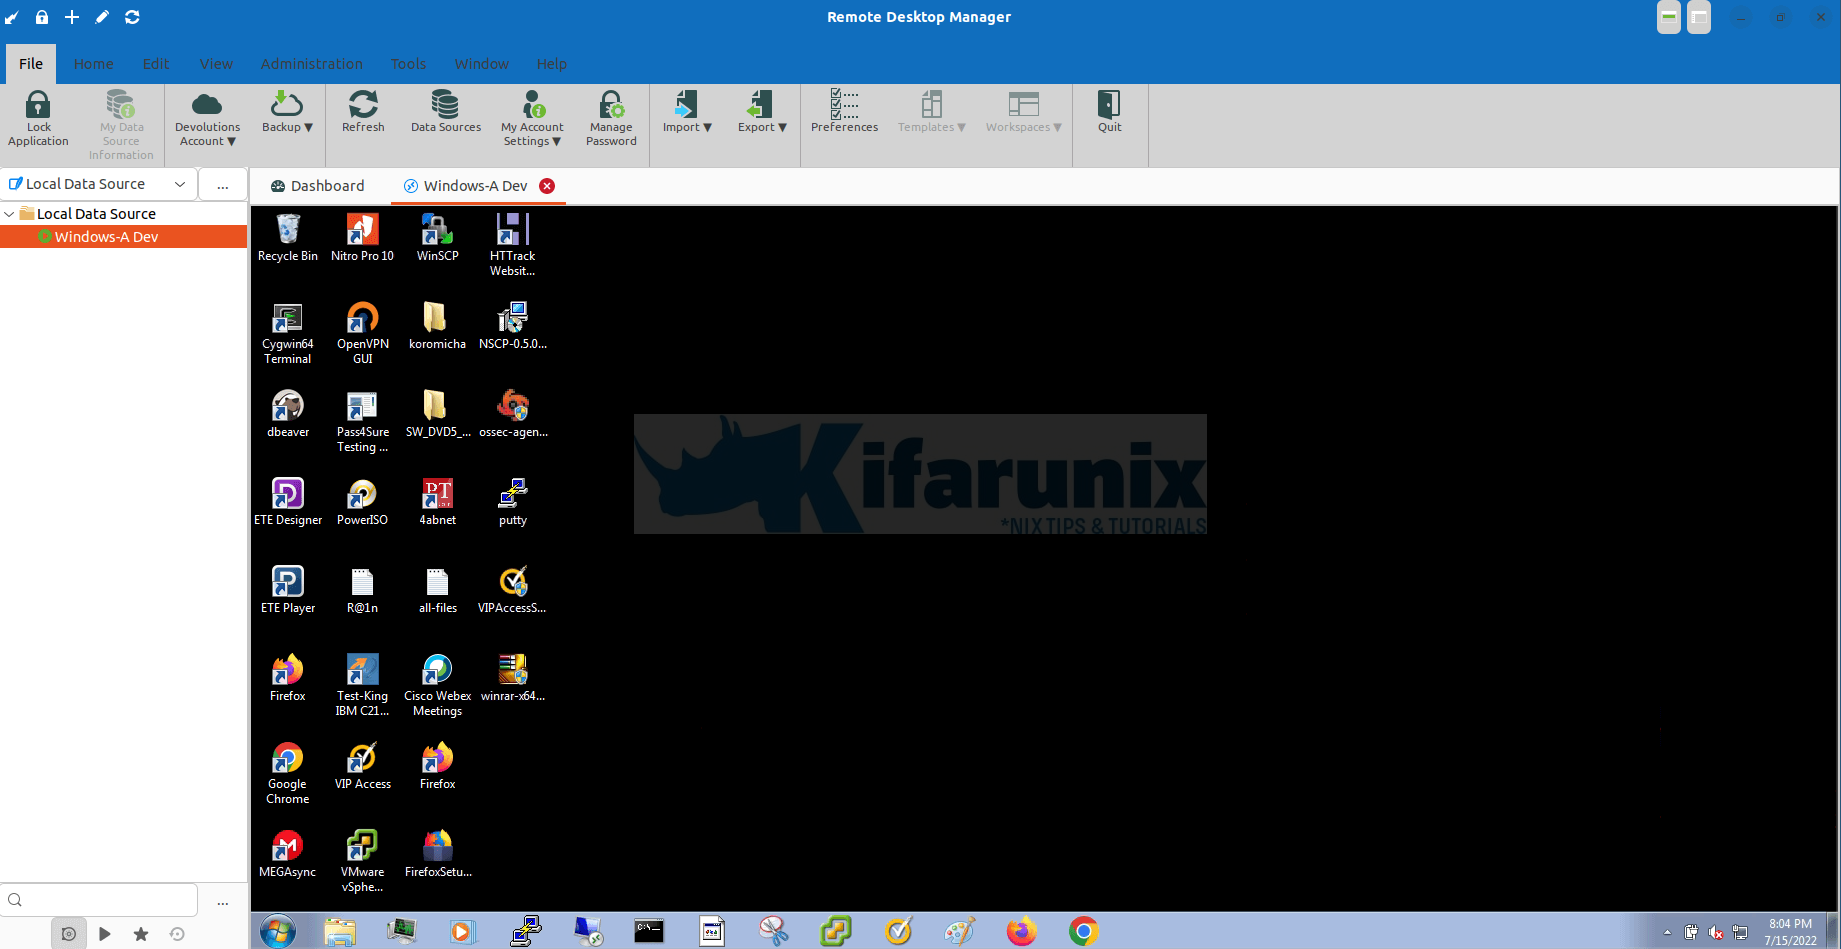 Install Devolution Remote Desktop Manager on Ubuntu/Debian